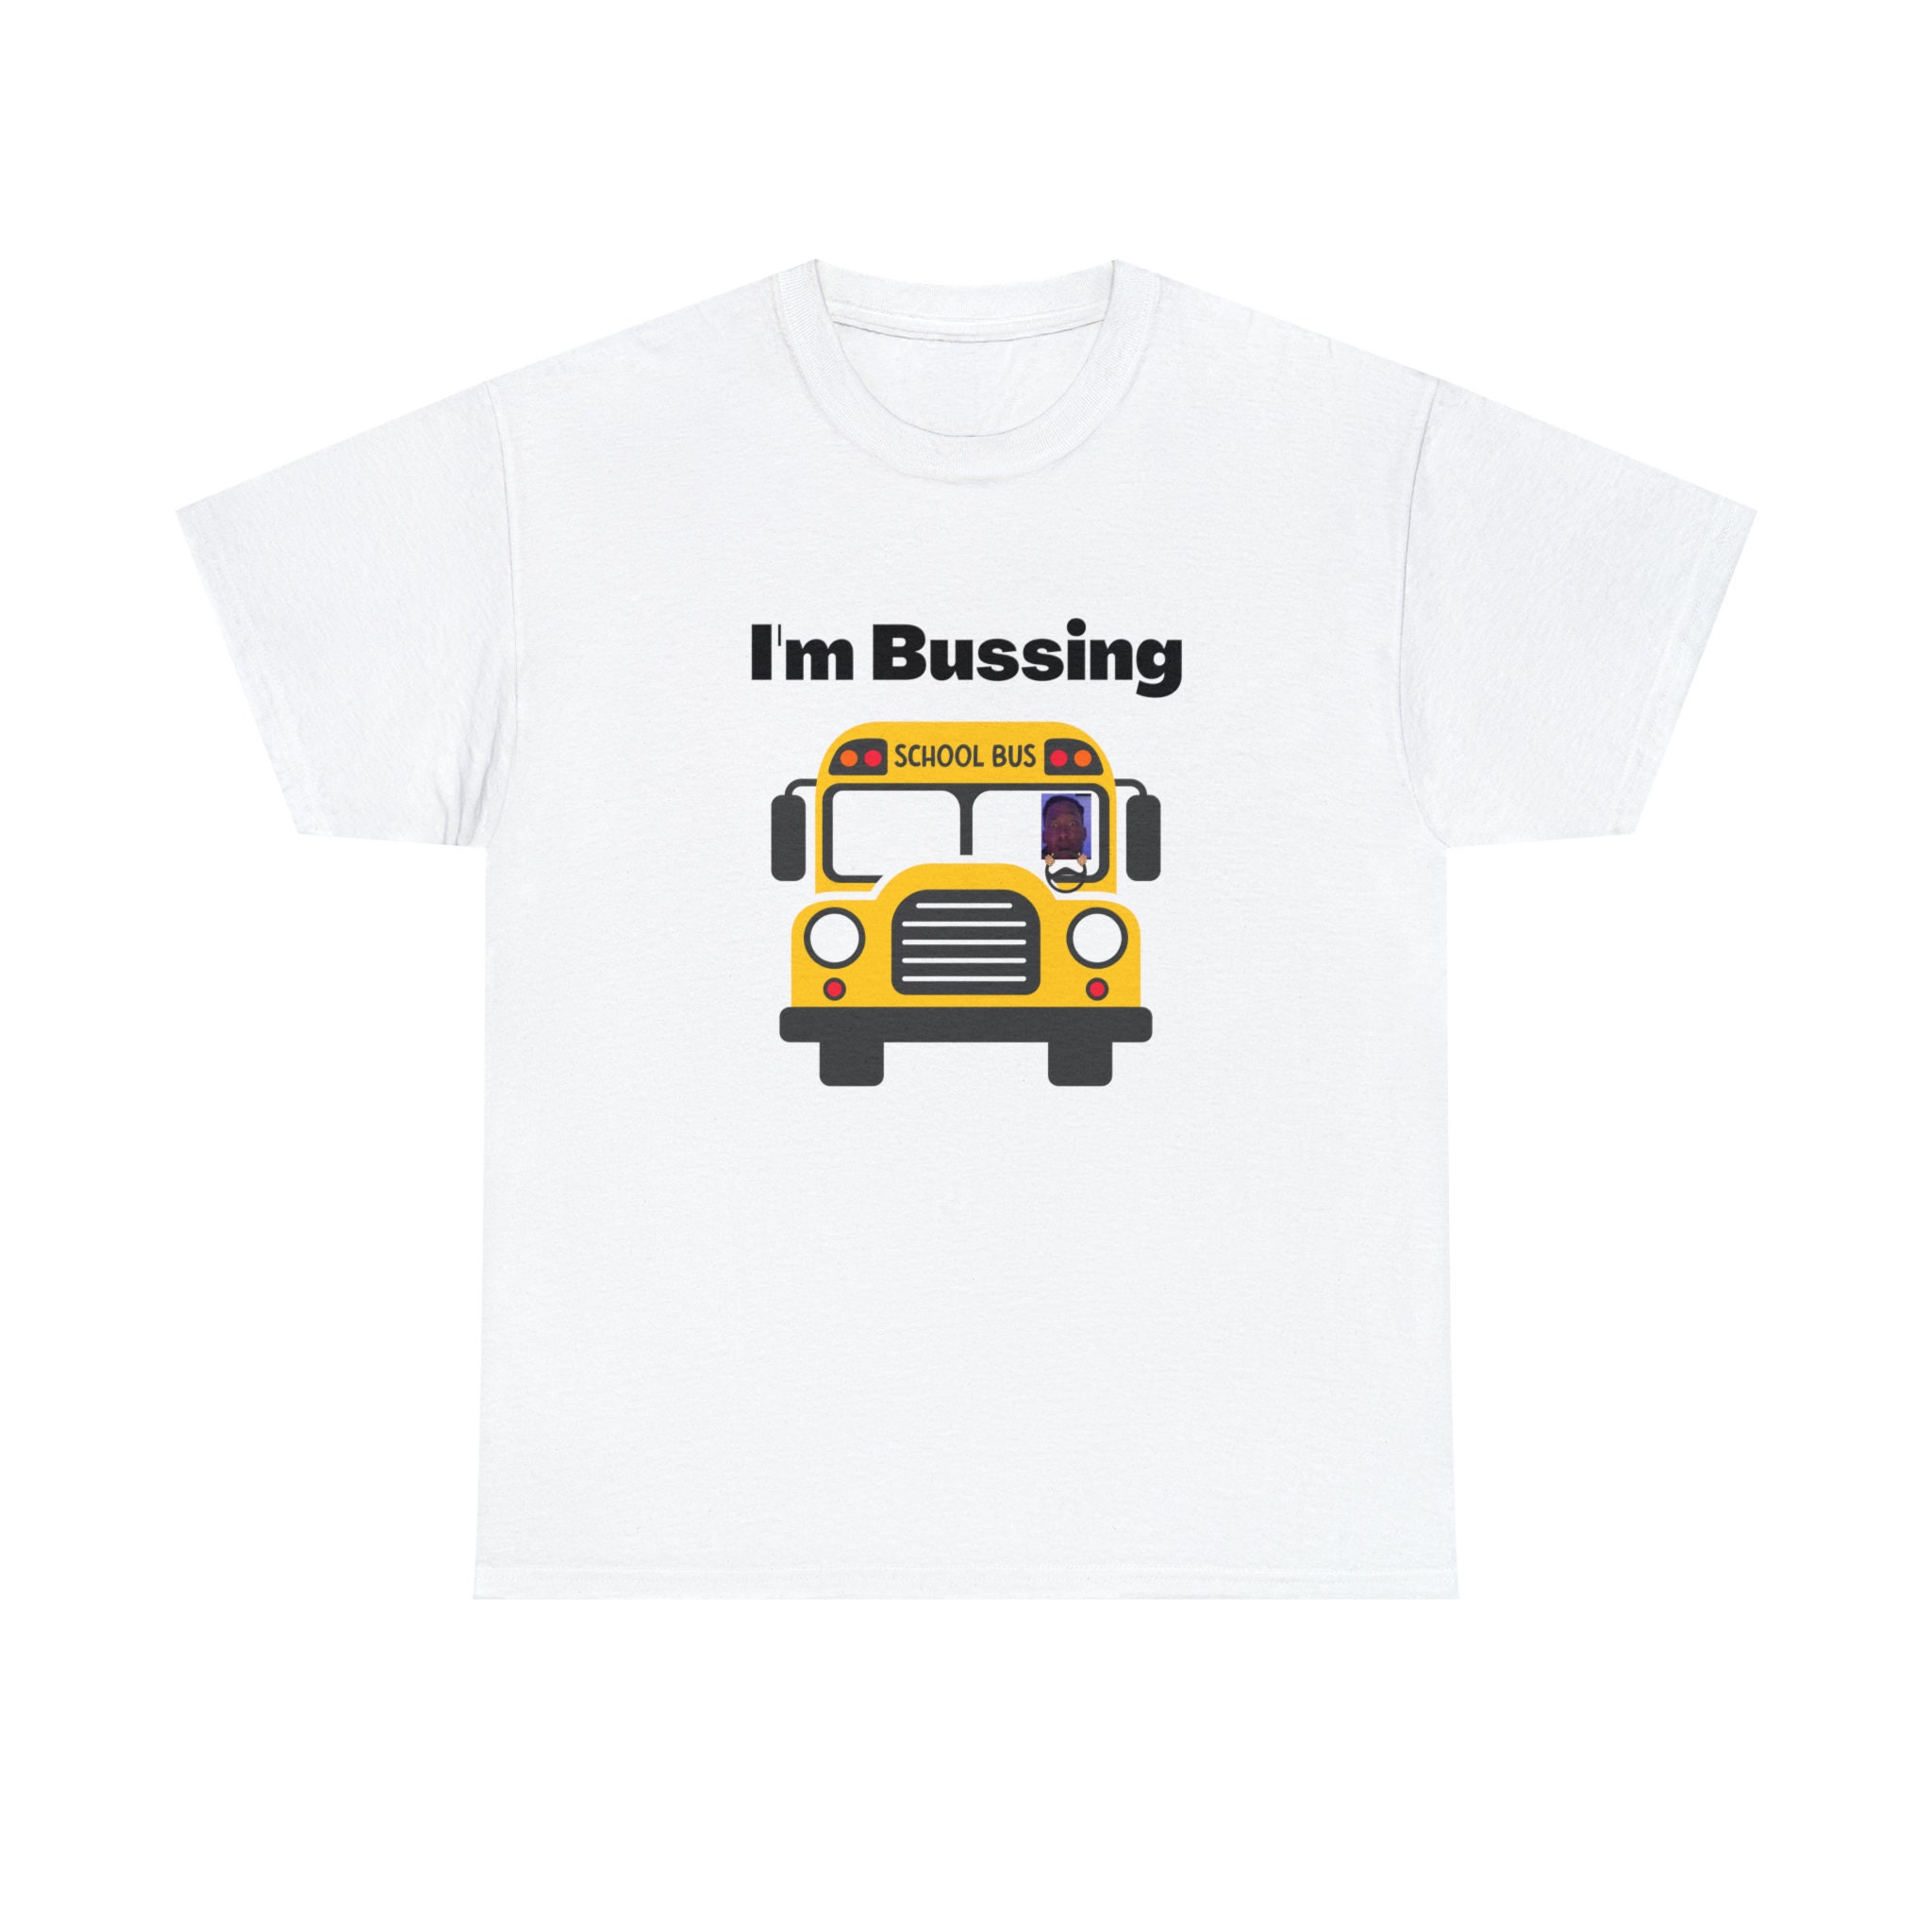 Ambatukam dreamybull Corporation Funny T-shirt 